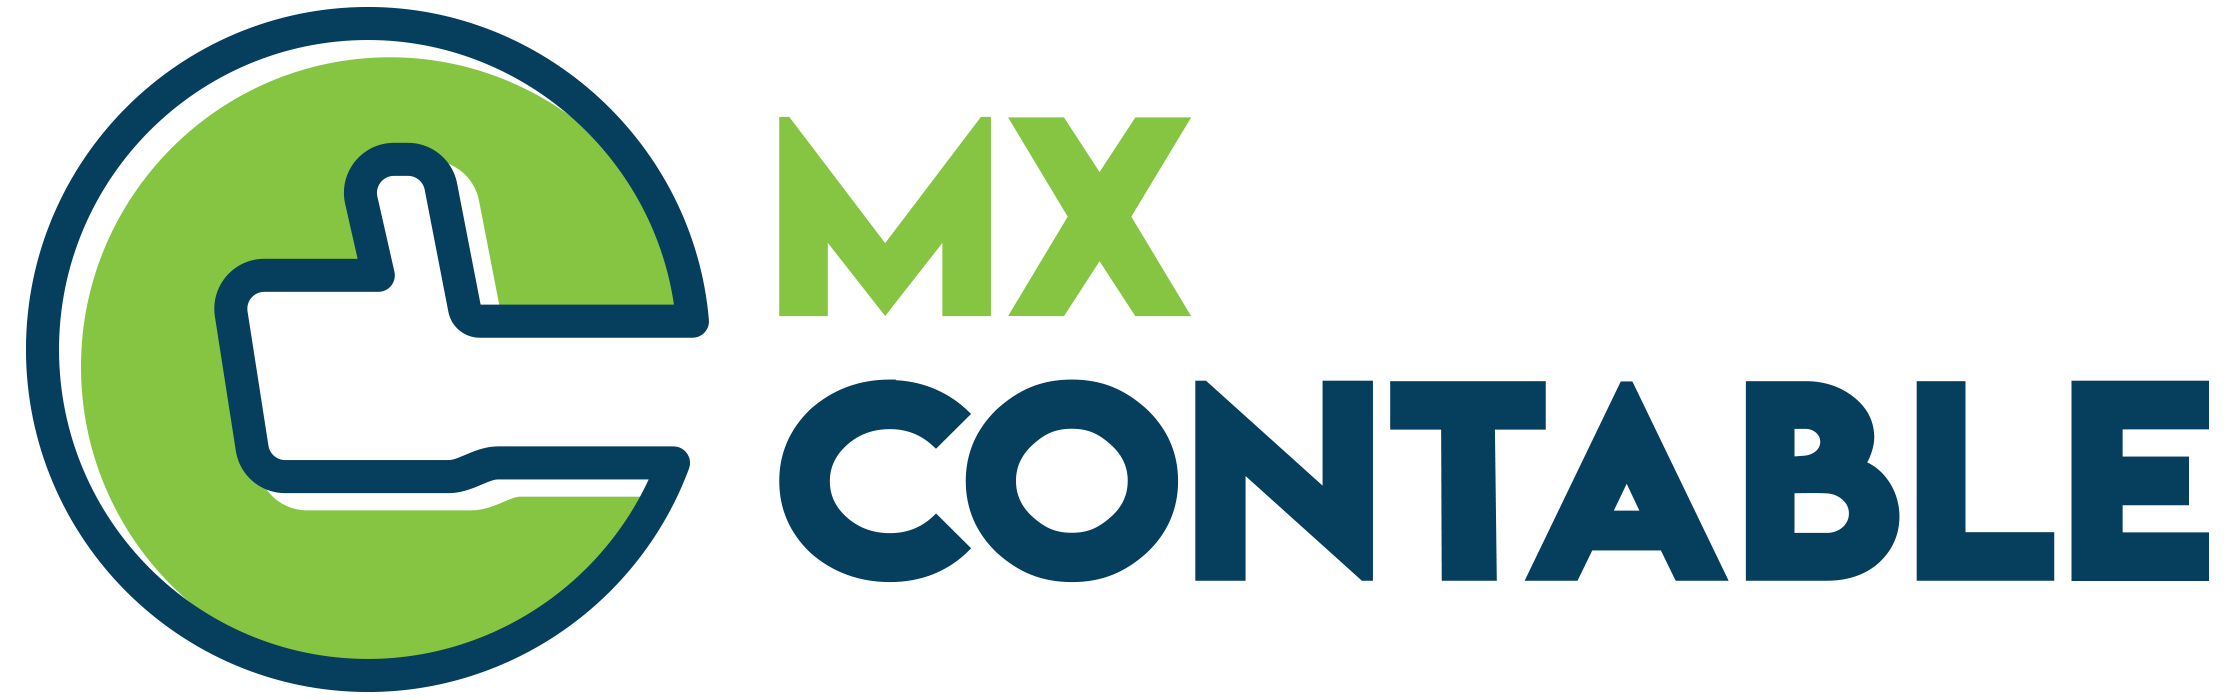 MX Contable – Despacho contable en México